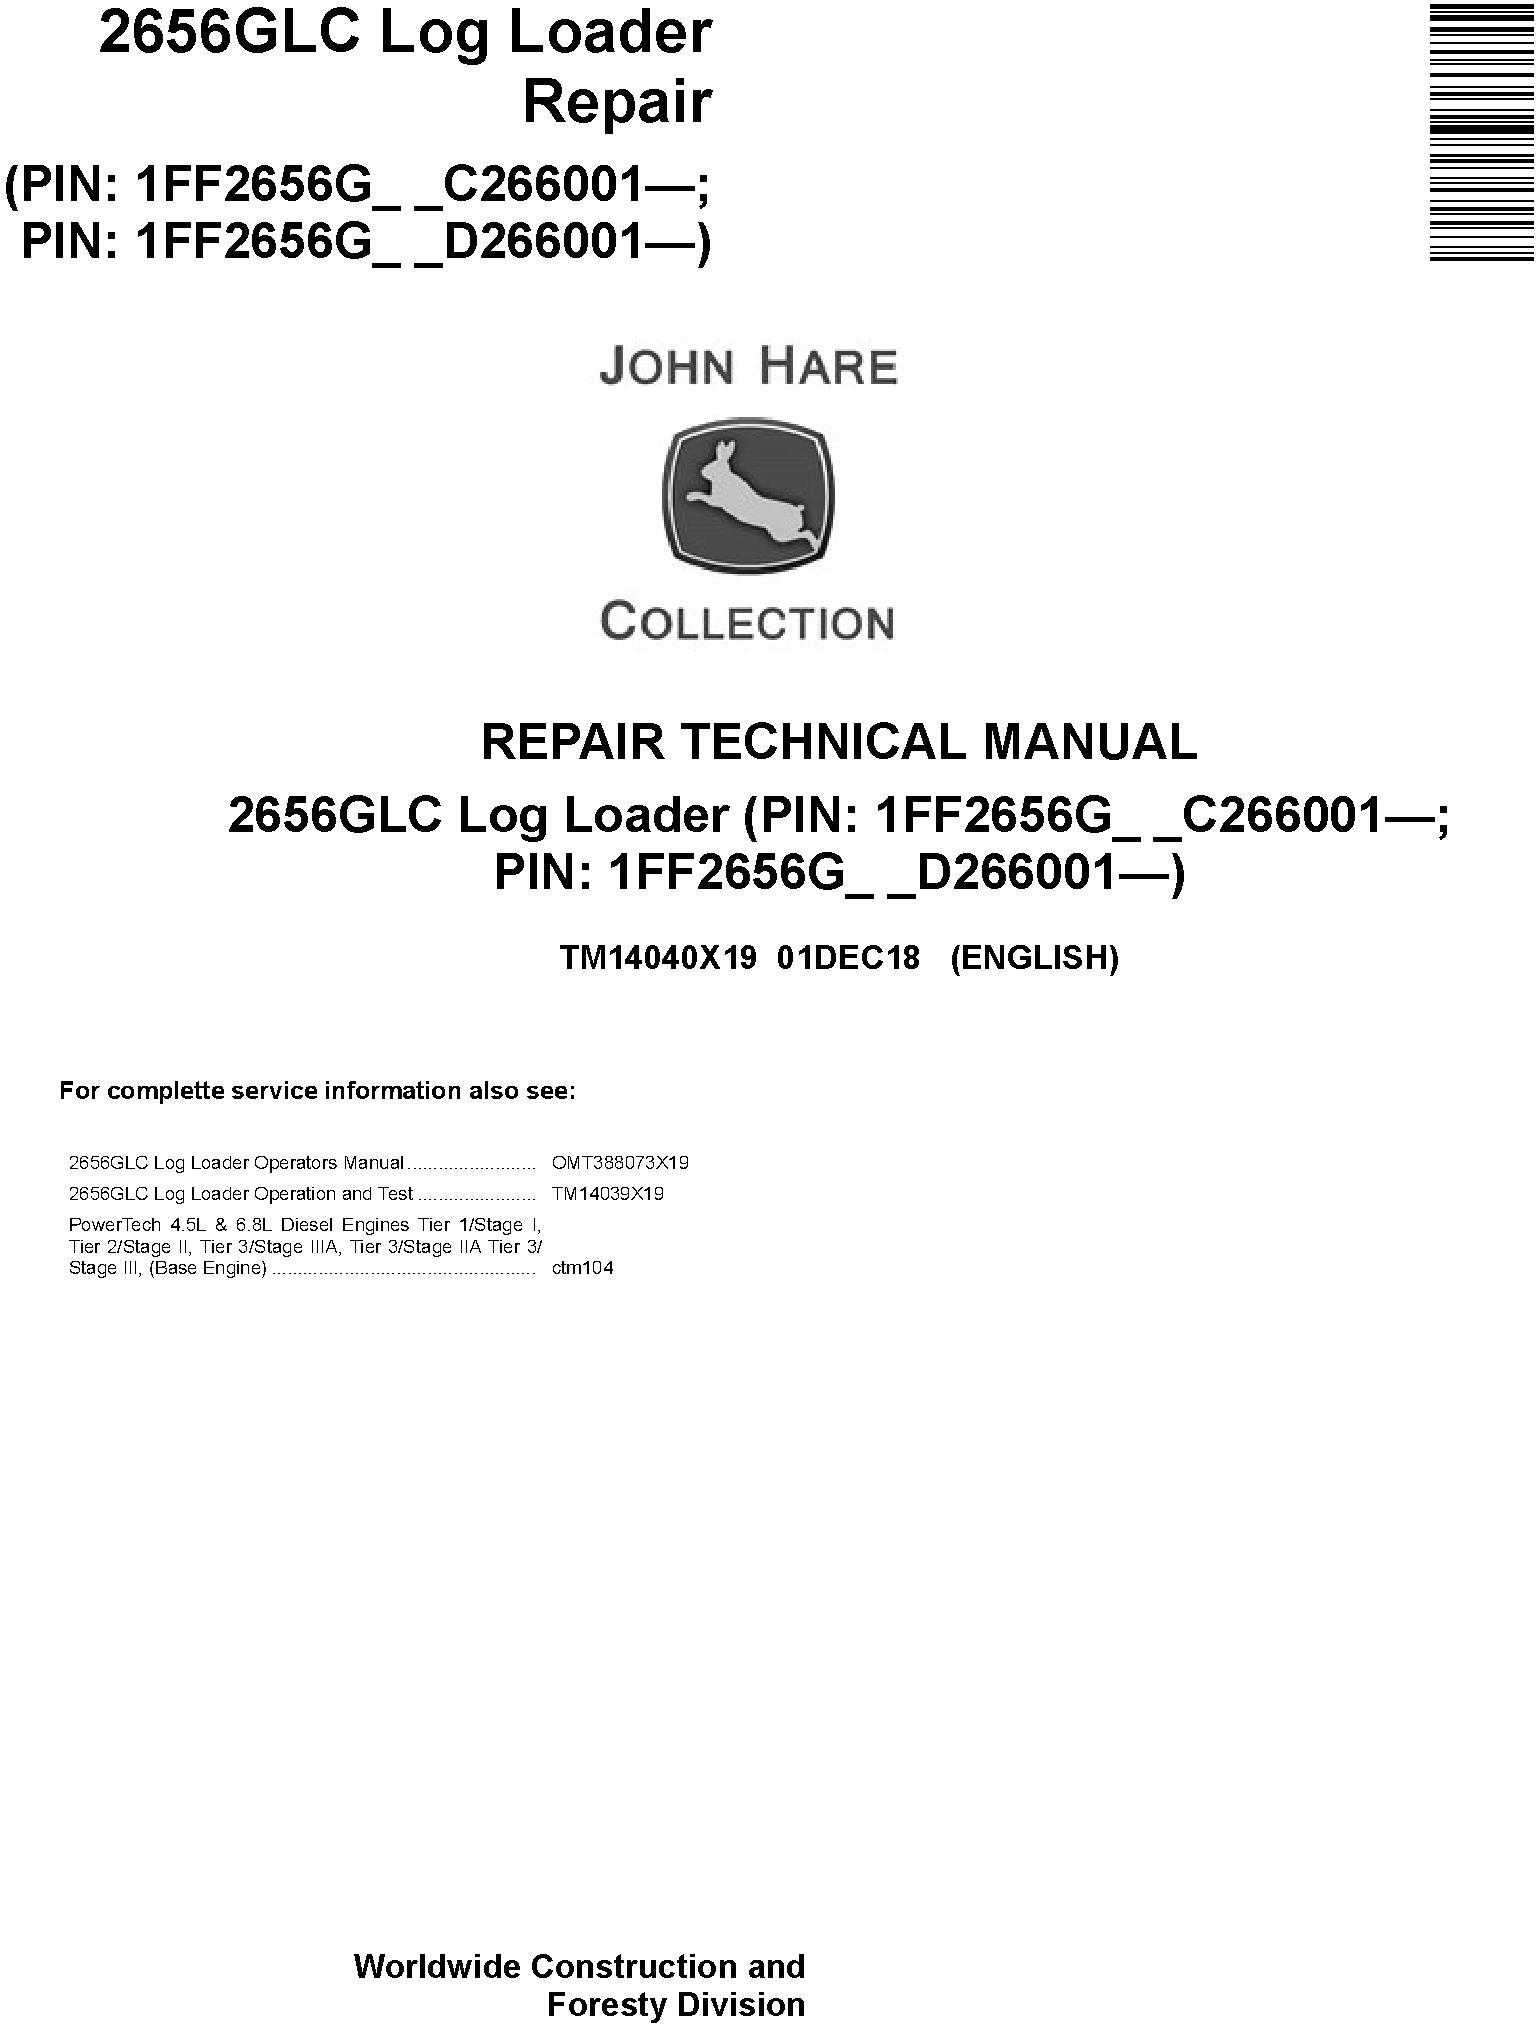 John Deere 2656GLC (SN. C266001-, D266001) Log Loader Repair Technical Service Manual (TM14040X19) - 19209